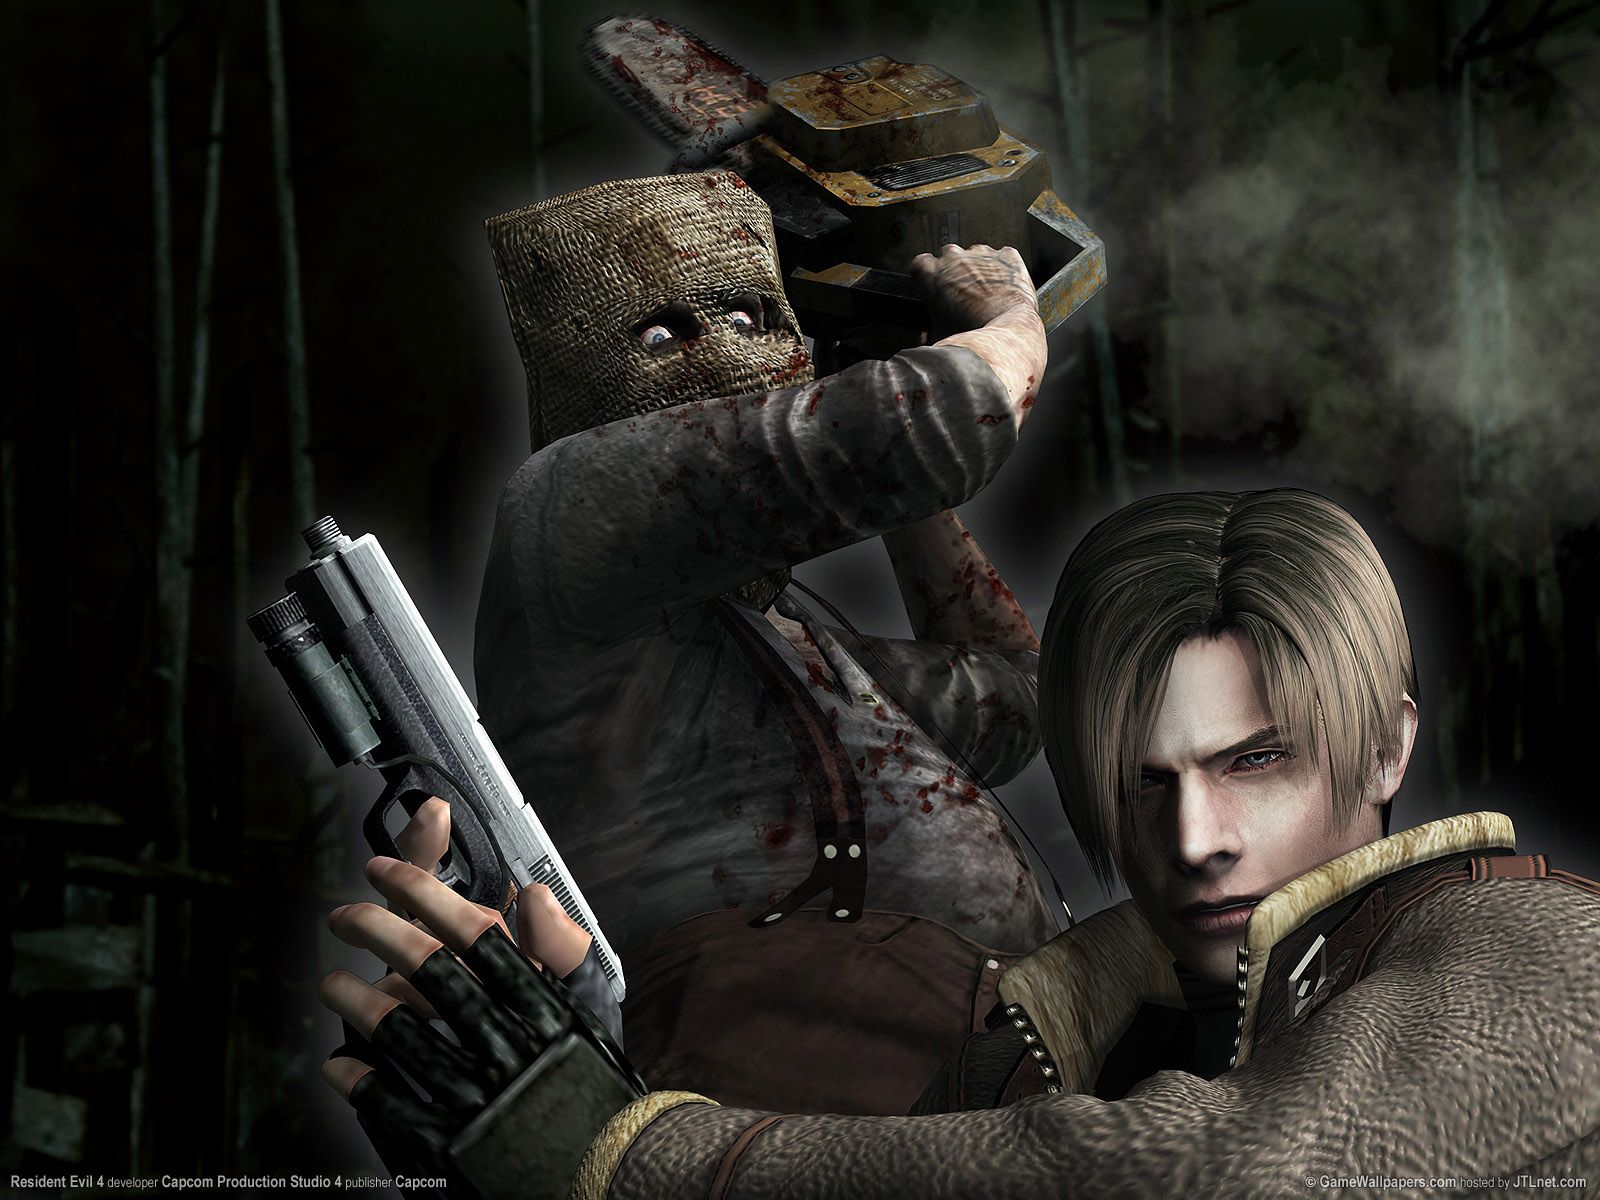 Resident Evil 4 wallpapers | Resident Evil 4 stock photos